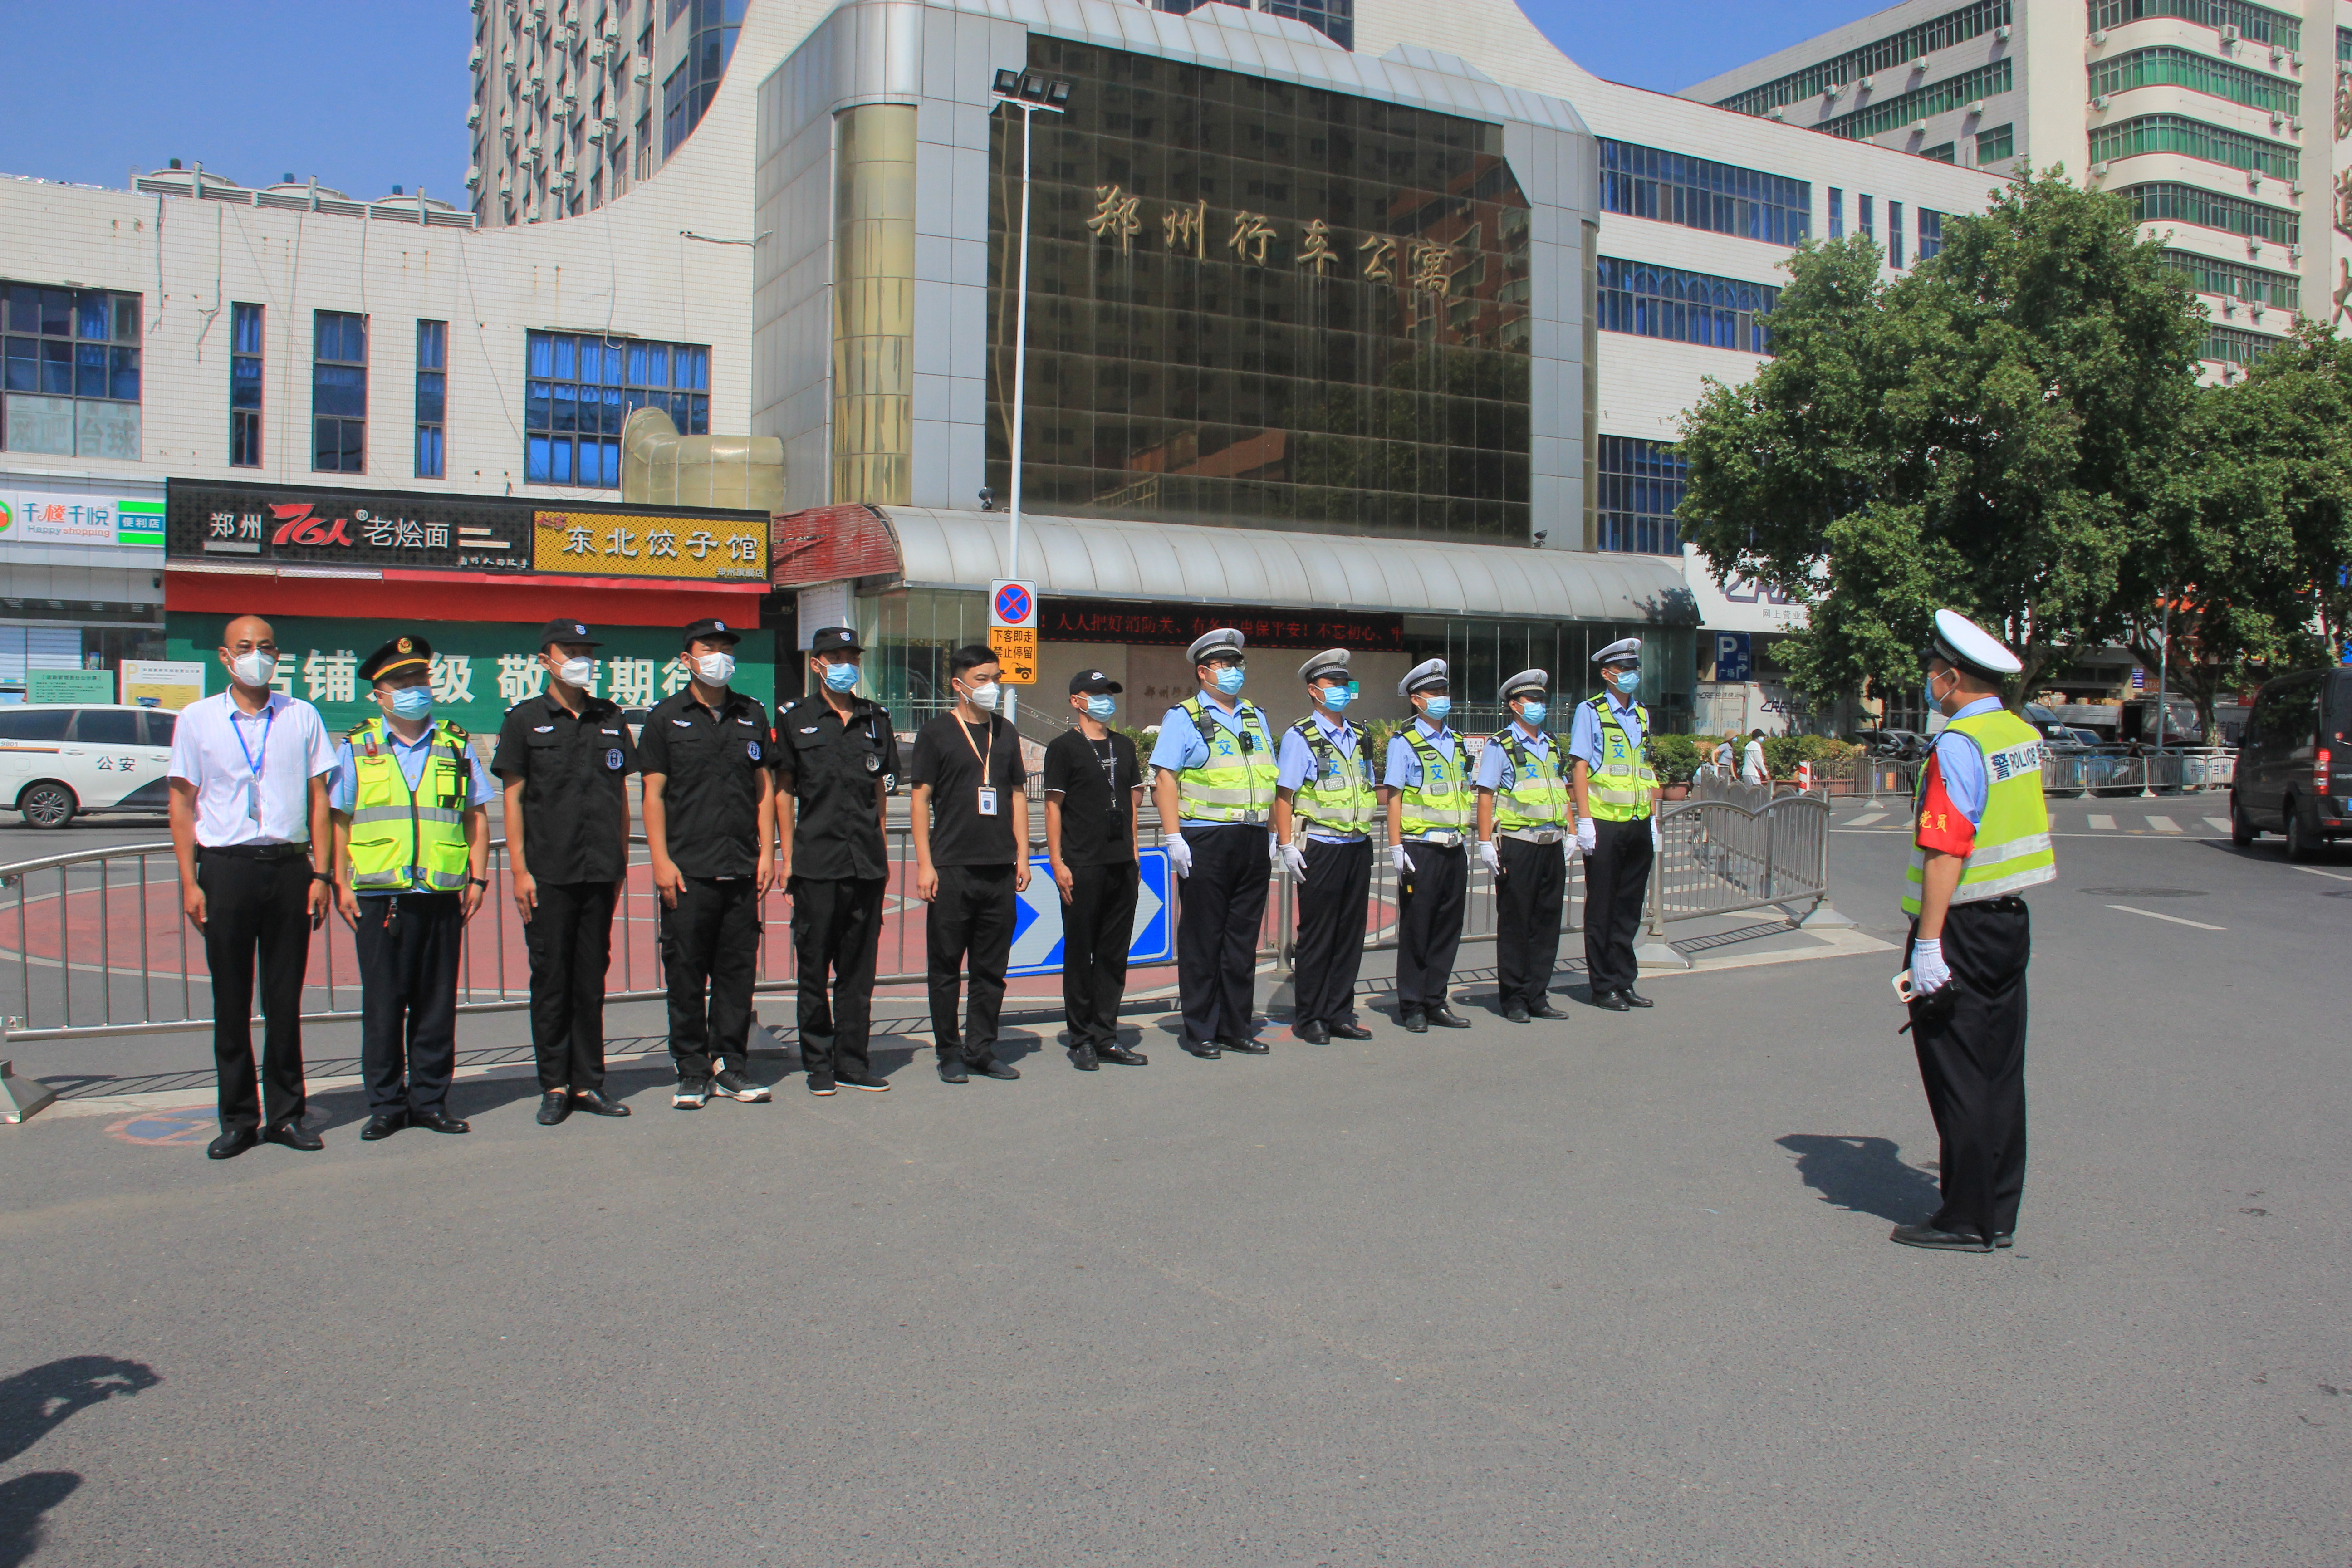 暑期这些违法行为很常见 郑州交警开展专项整治